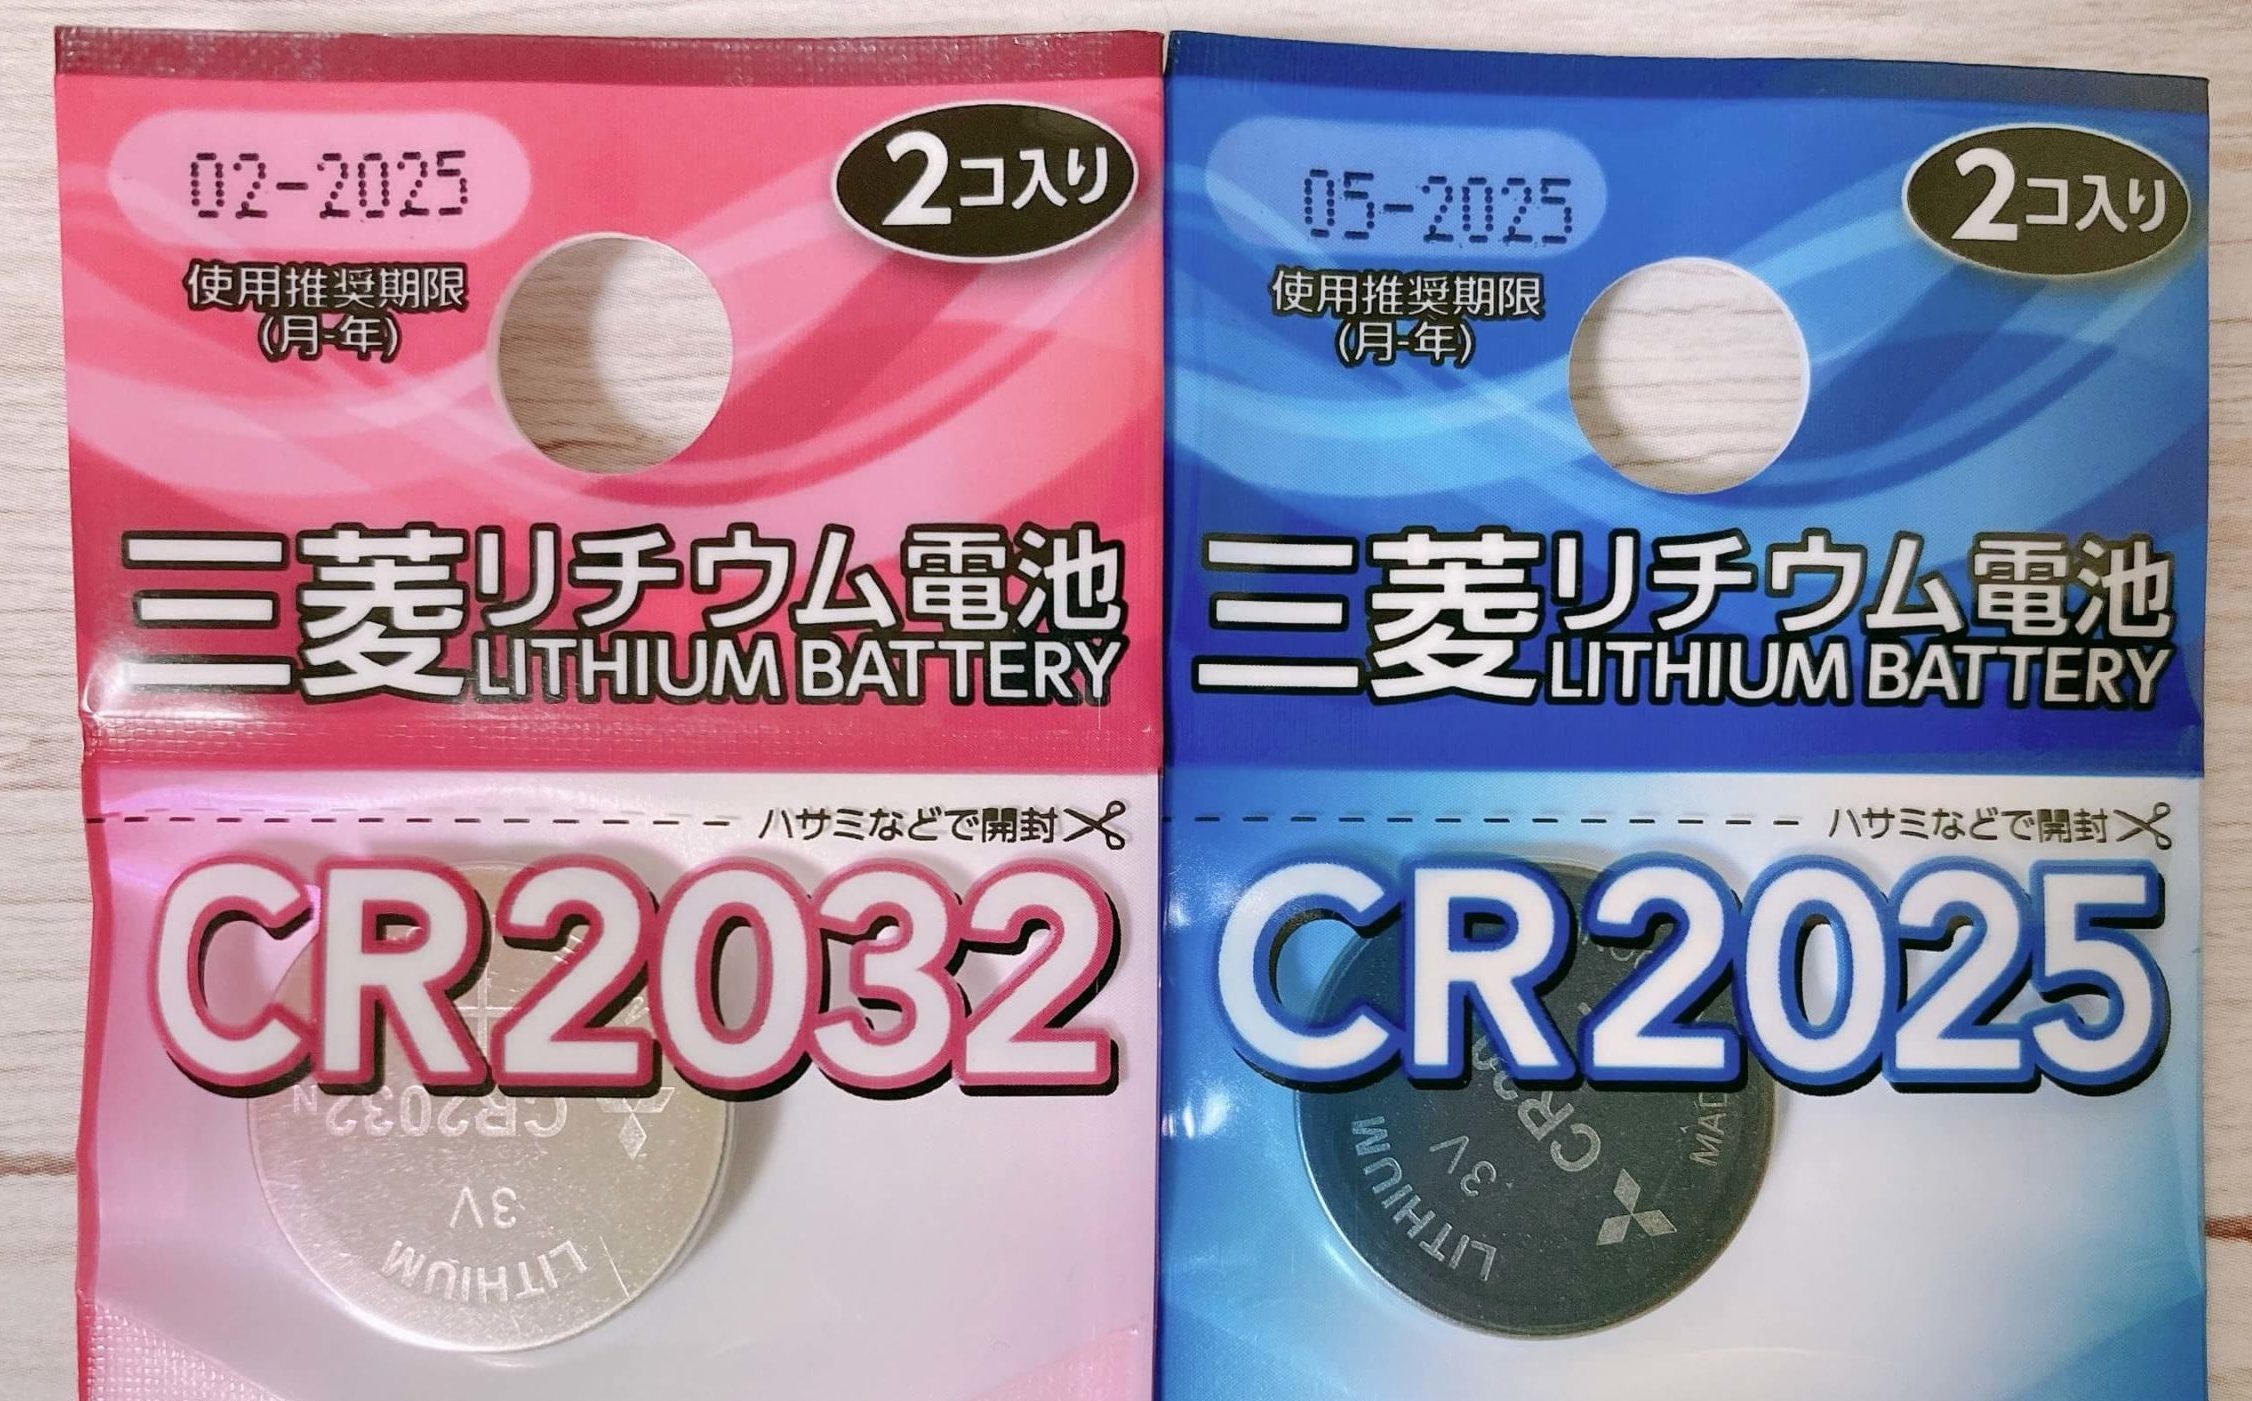 CR2032とCR2025のリチウム電池の表示